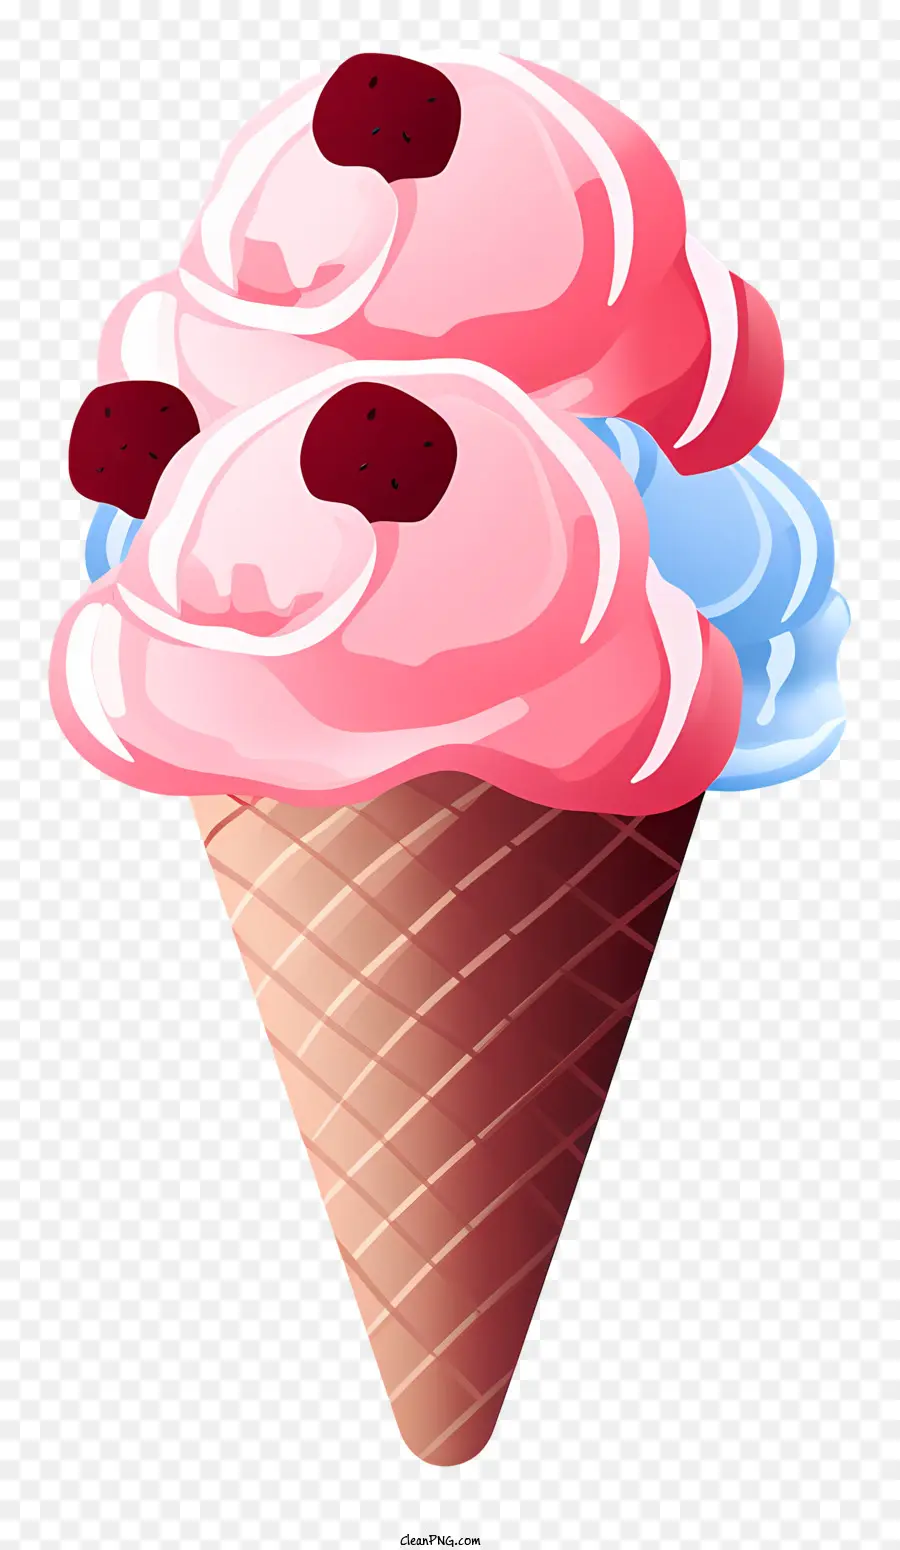 cono di gelato rosa condimenti lampone di lampone di cioccolato immersione visivamente accattivante dessert che attira l'attenzione - Cone gelato rosa con condimenti di lampone e tuffo al cioccolato su sfondo nero, visivamente attraente ed evoca emozioni